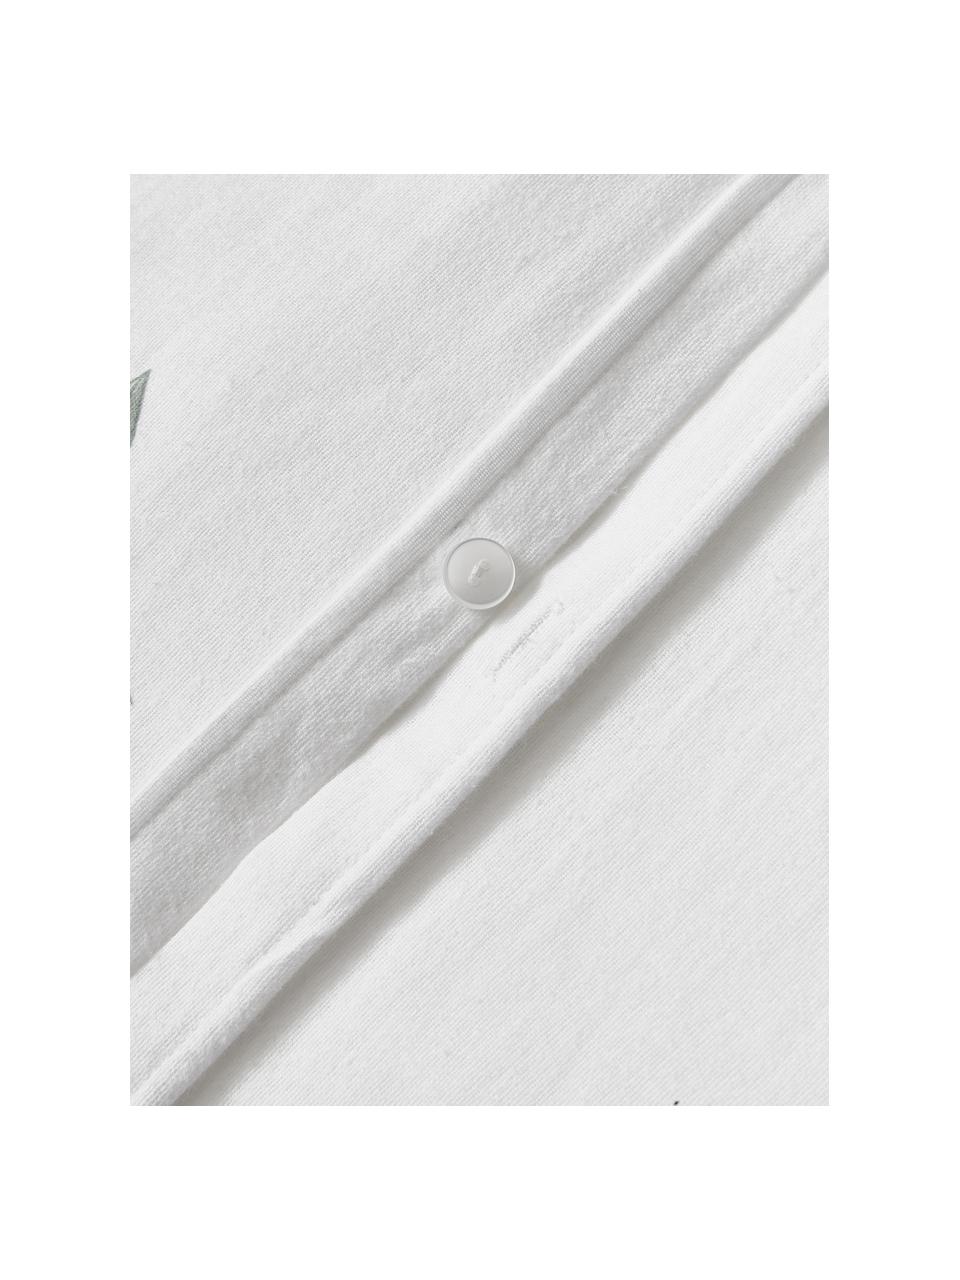 Flanellen dekbedovertrek Fraser, Weeftechniek: flanel Flanel is een knuf, Wit, saliegroen, B 240 x L 220 cm